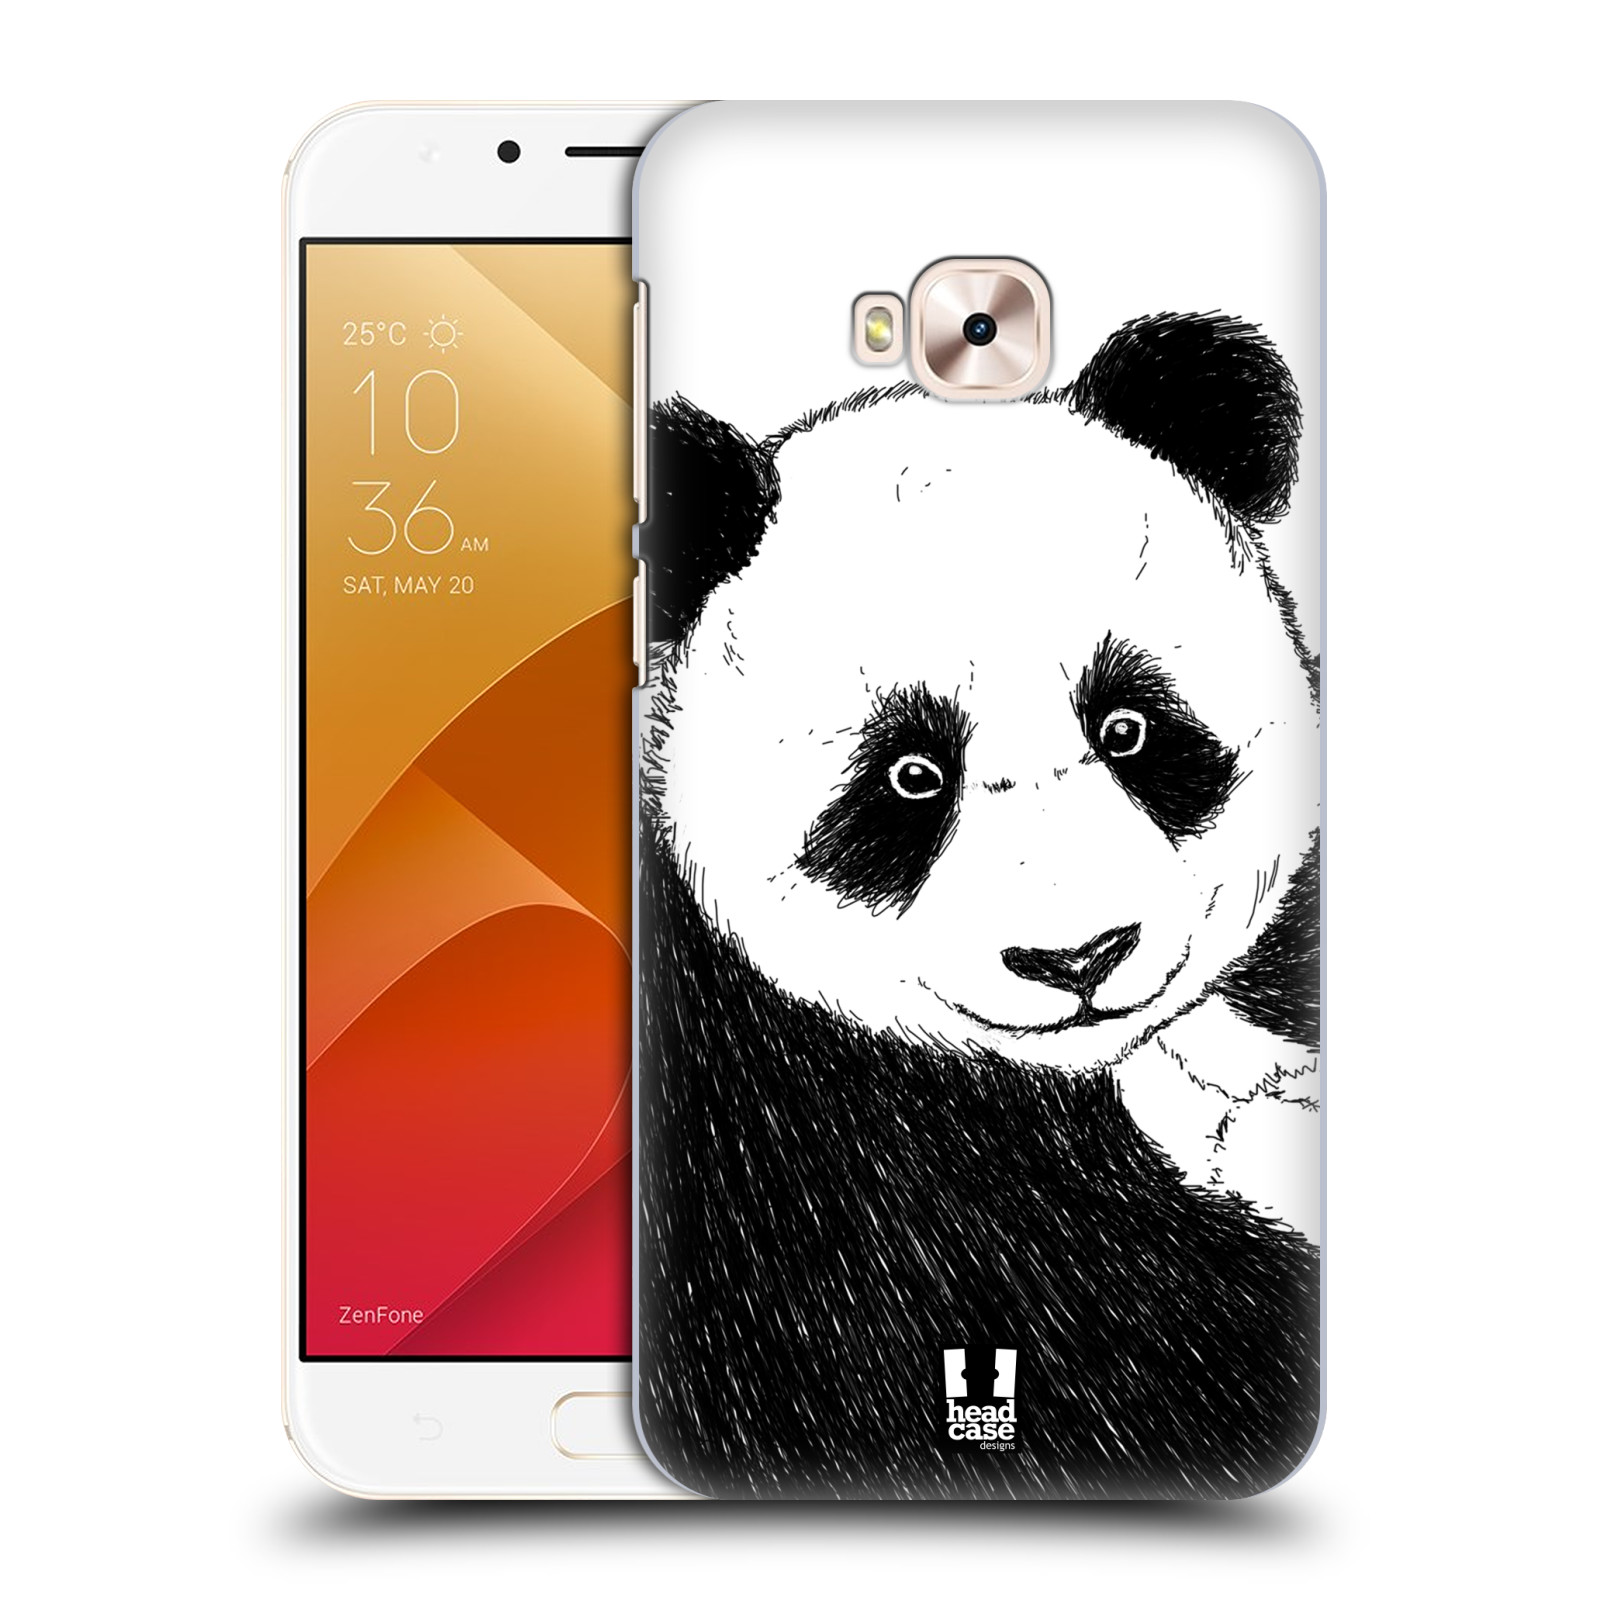 HEAD CASE plastový obal na mobil Asus Zenfone 4 Selfie Pro ZD552KL vzor Kreslená zvířátka černá a bílá panda